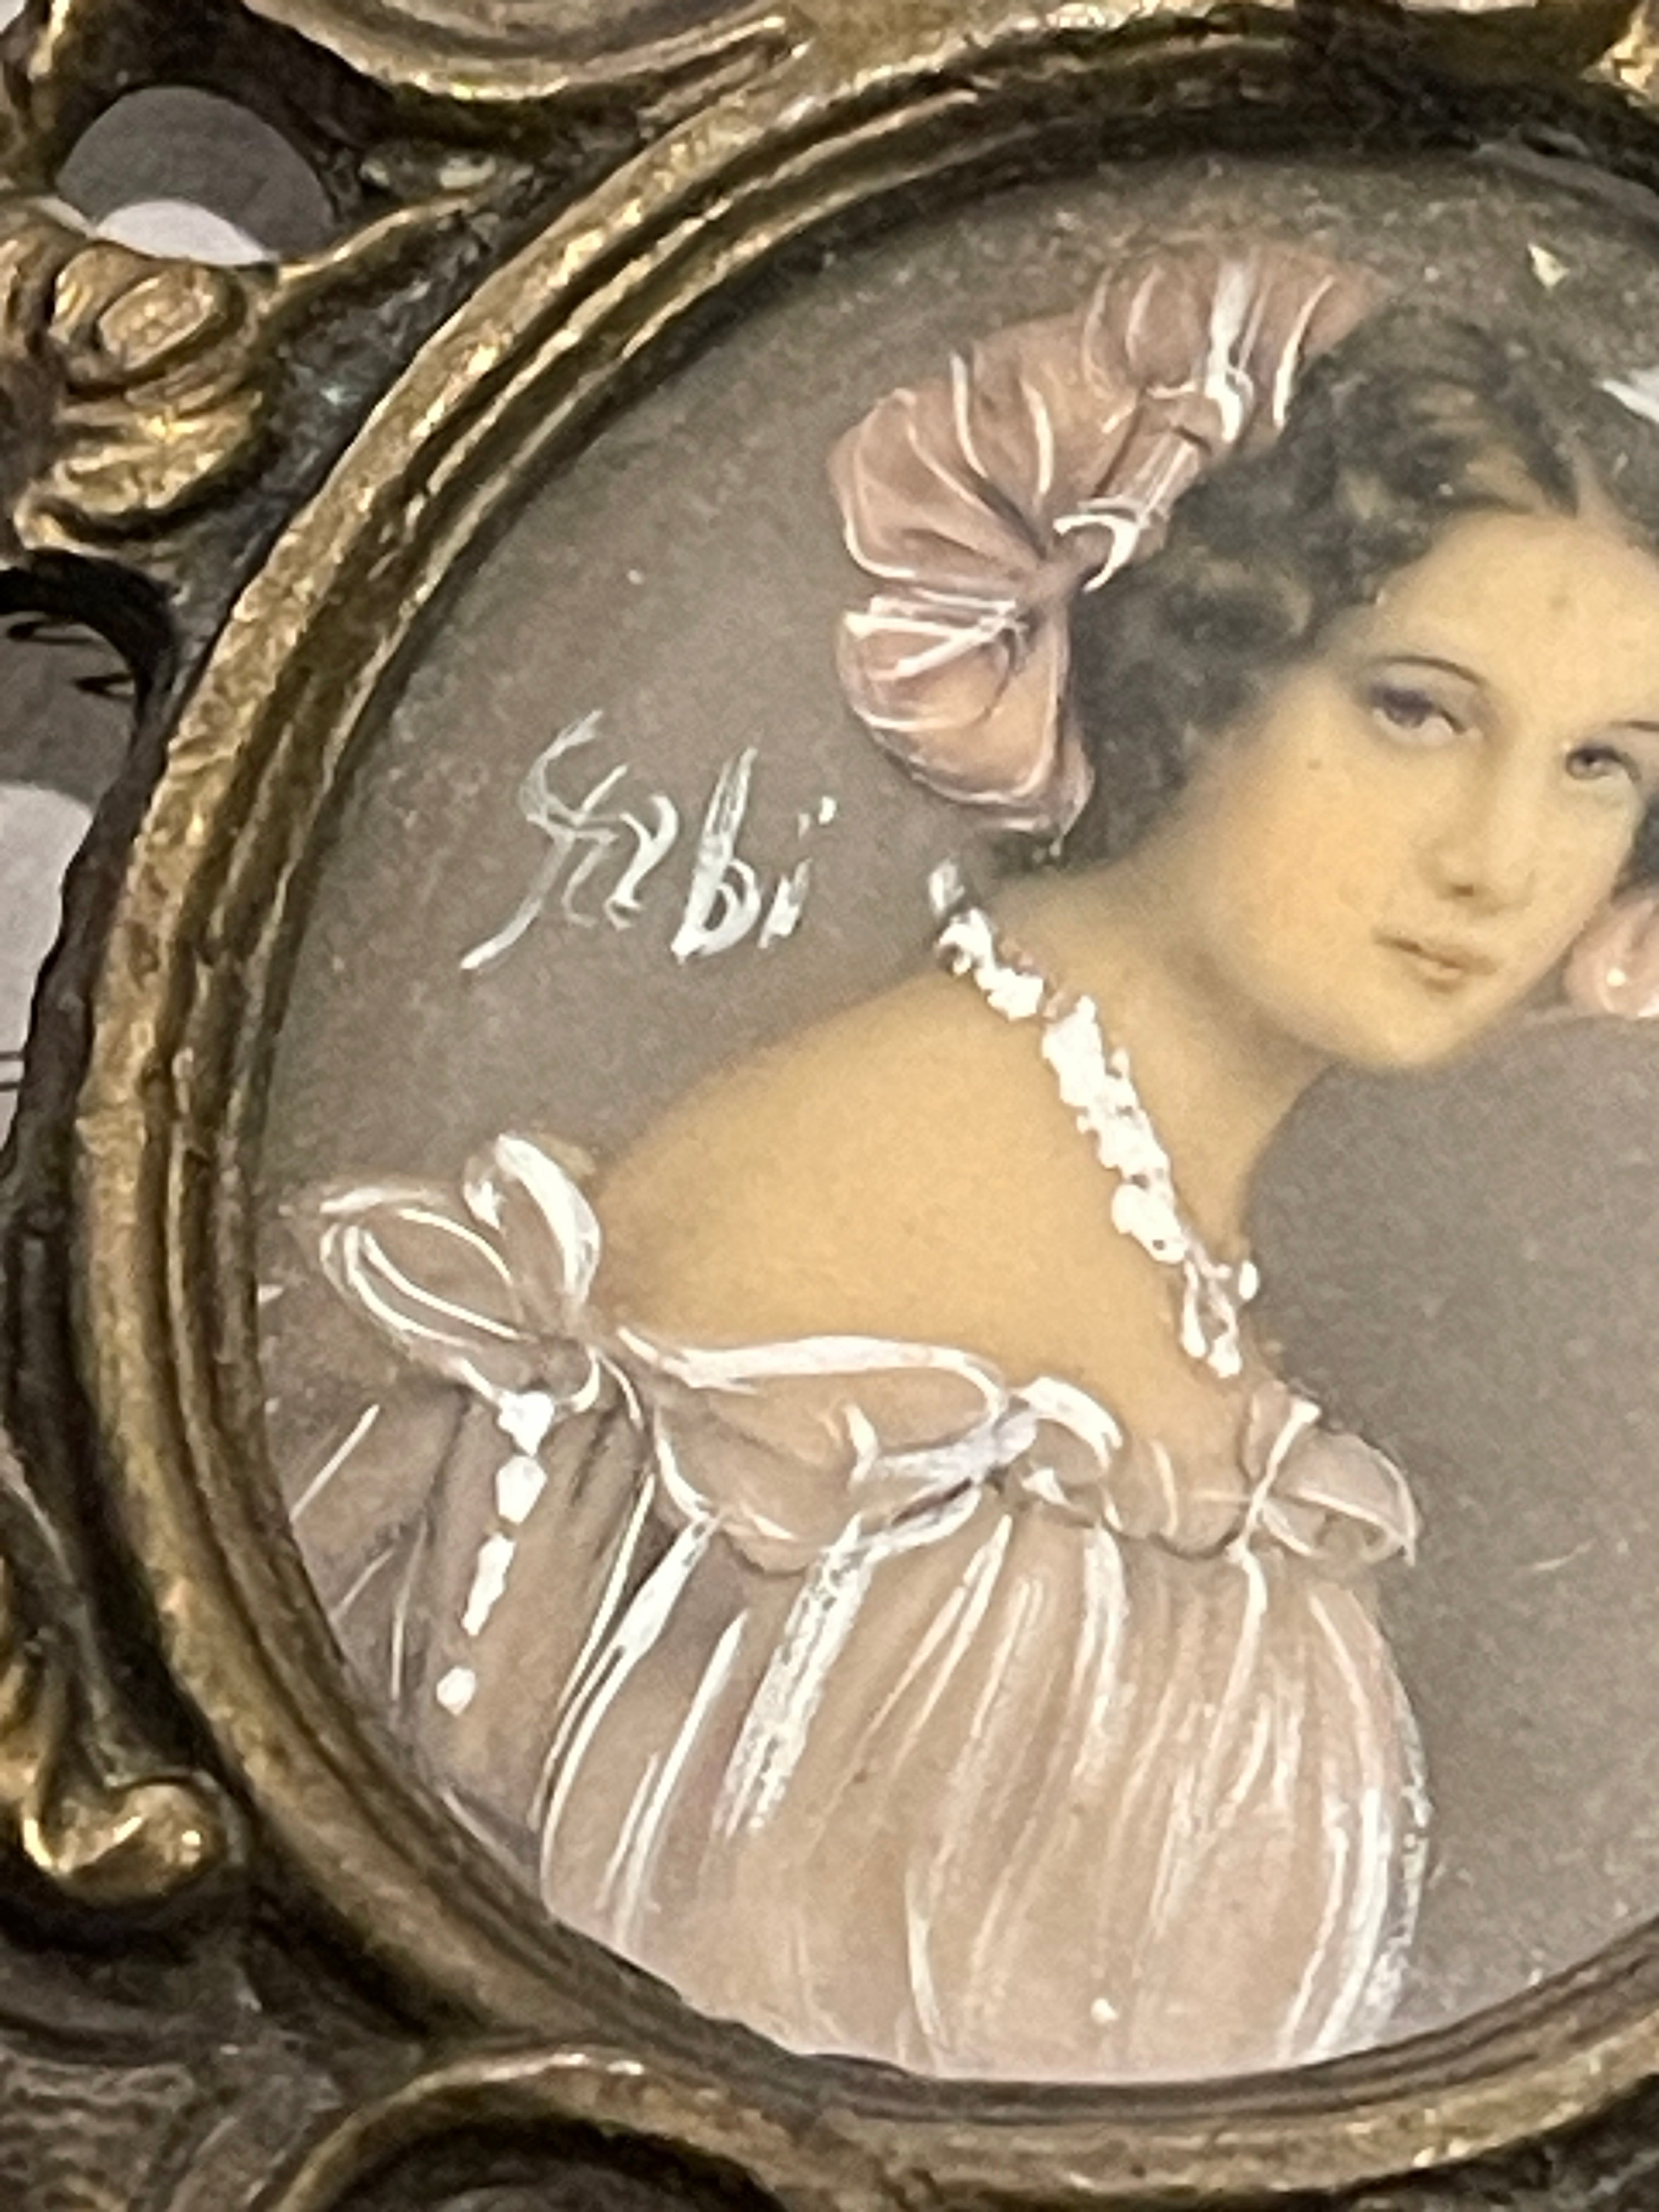 Antique French Miniature Portraits